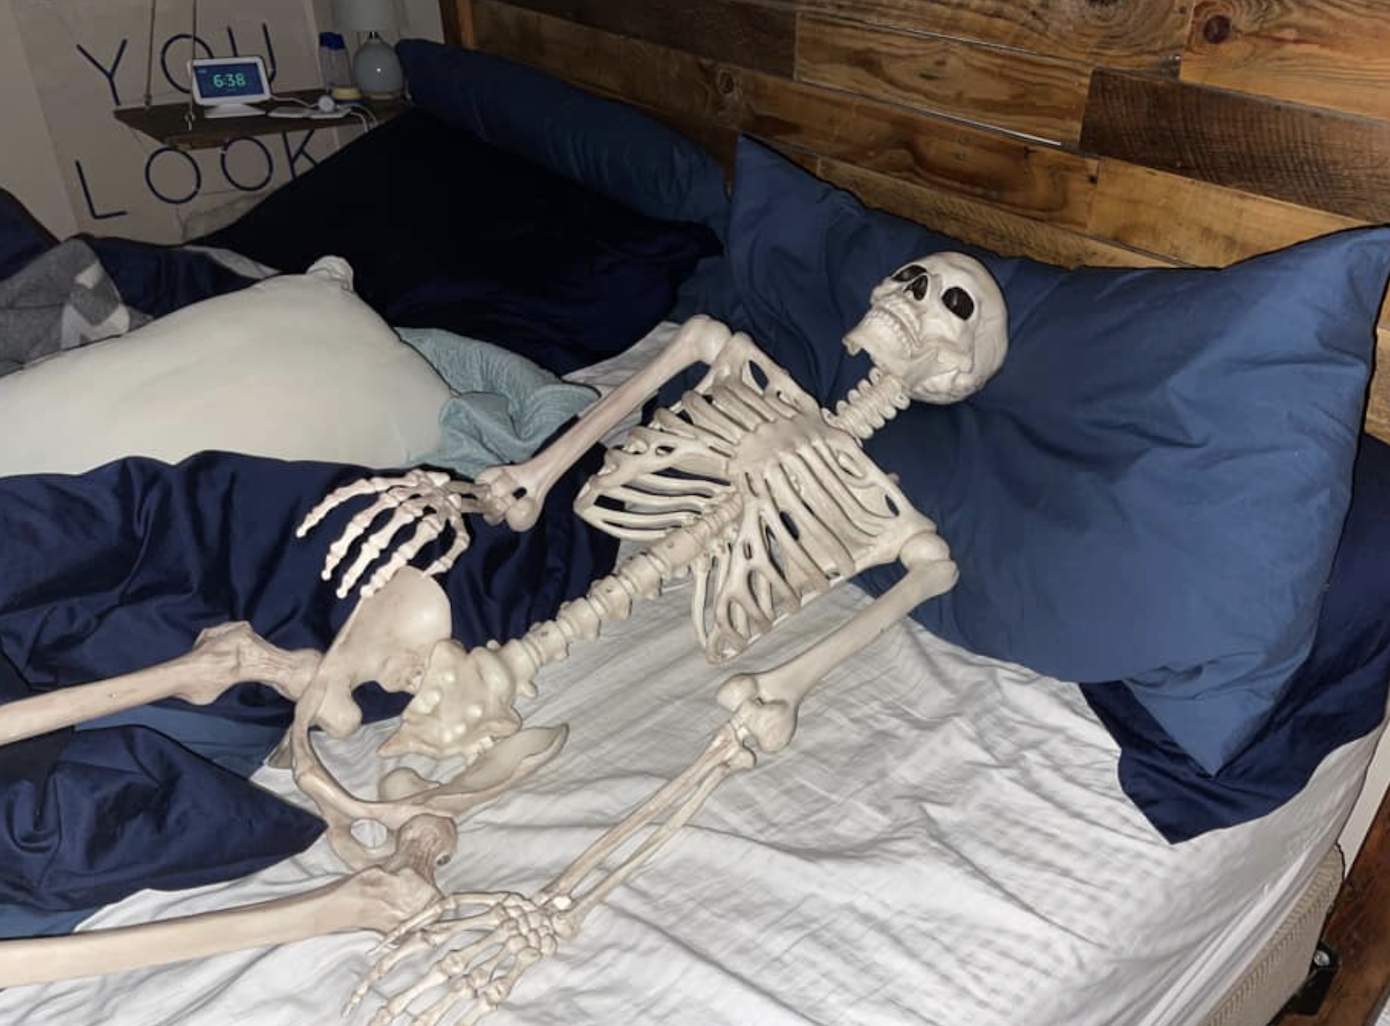 Skeleton in bed April Fools Day prank